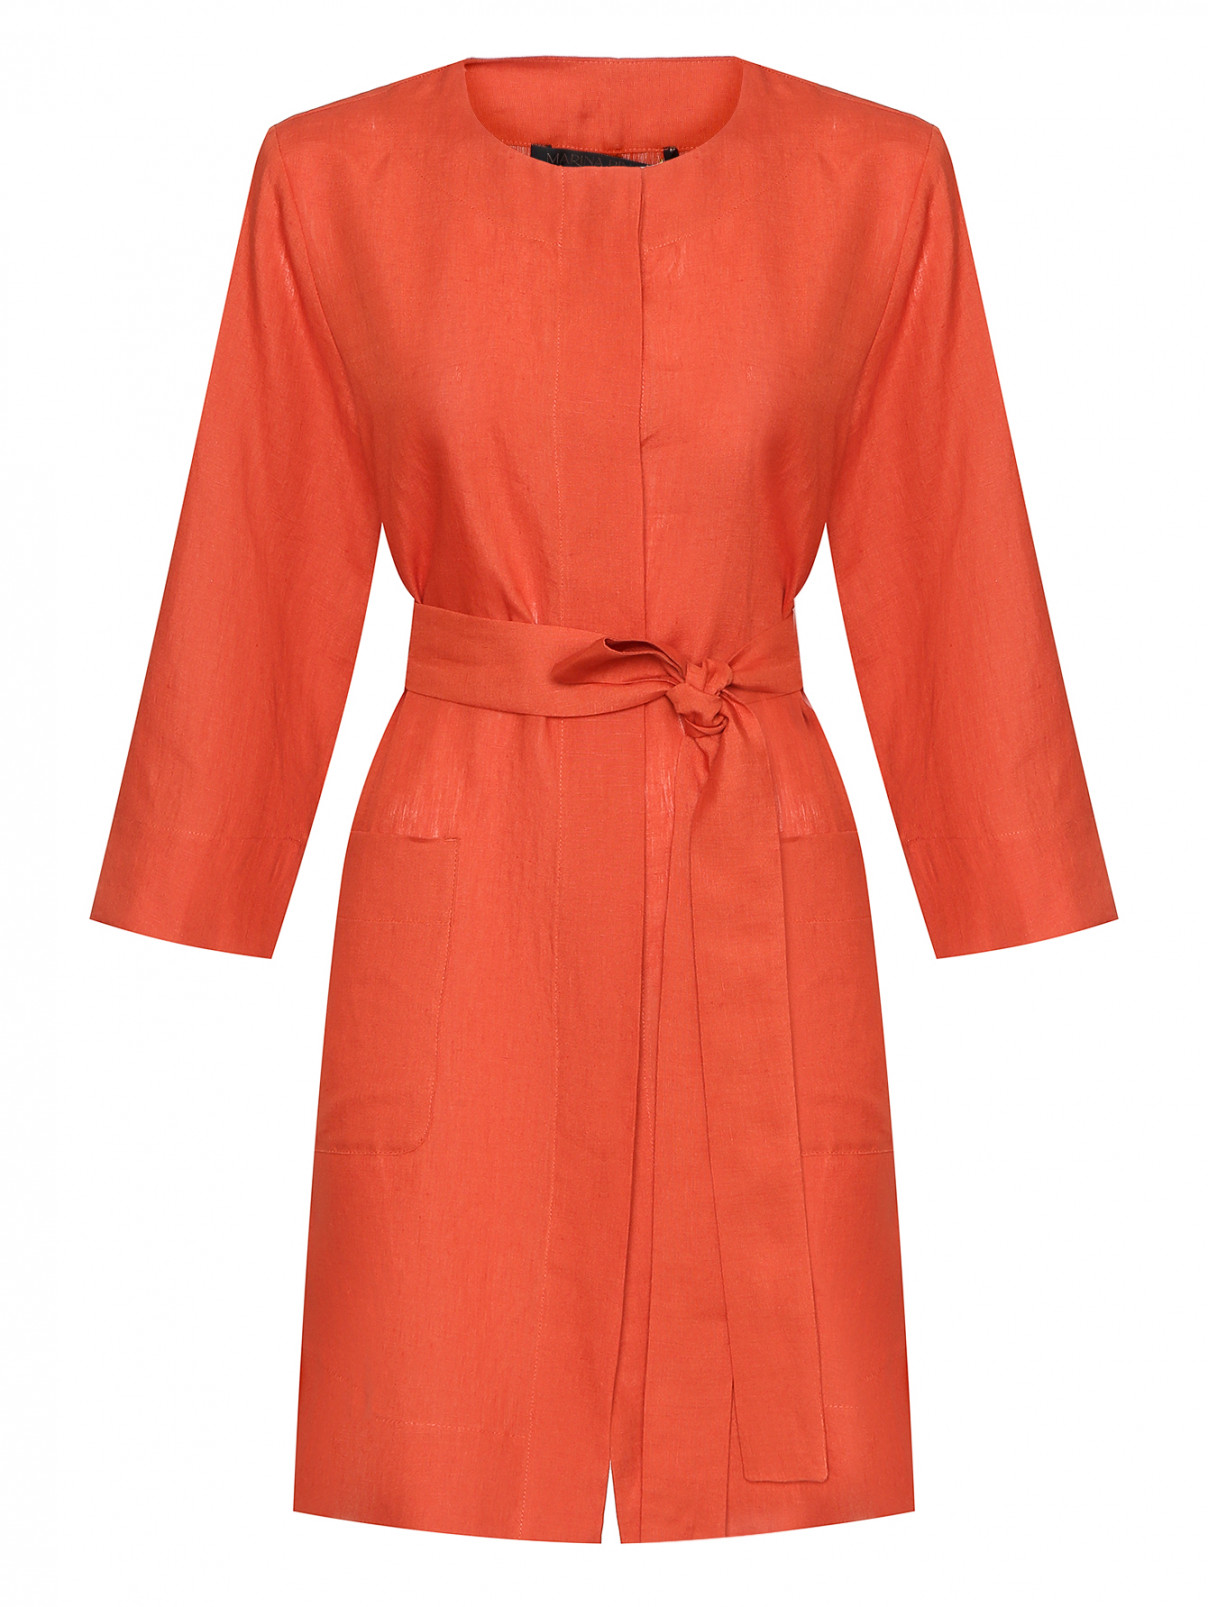 Удлиненная рубашка из льна Marina Rinaldi  –  Общий вид  – Цвет:  Оранжевый